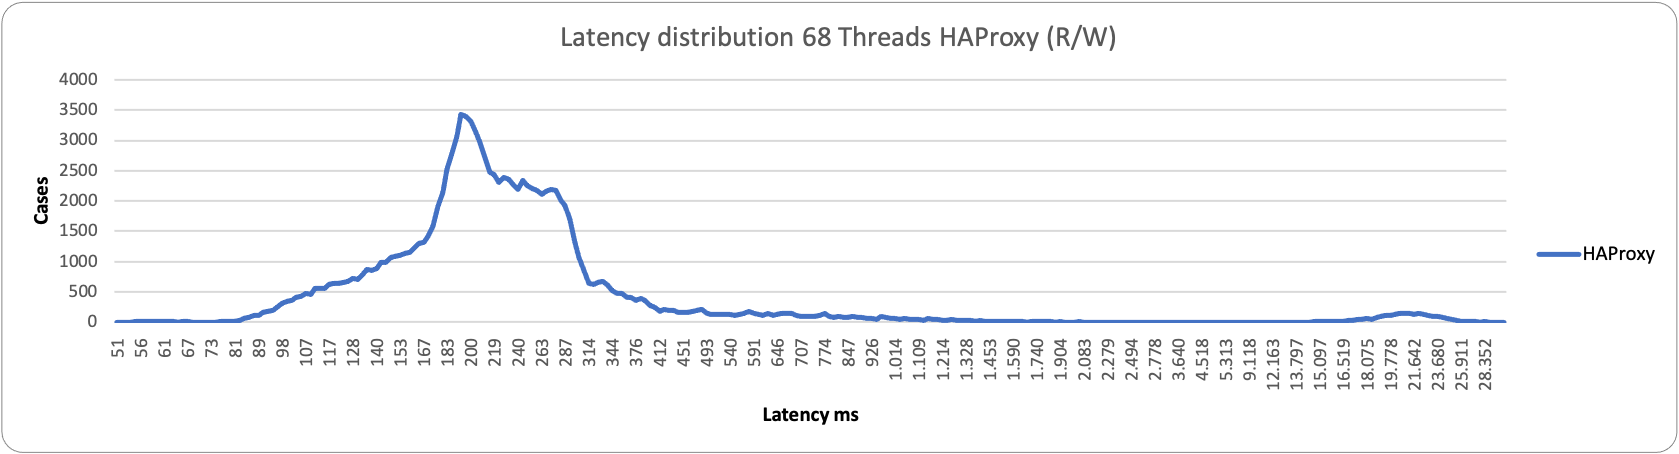 latency68 1node HAproxy rw